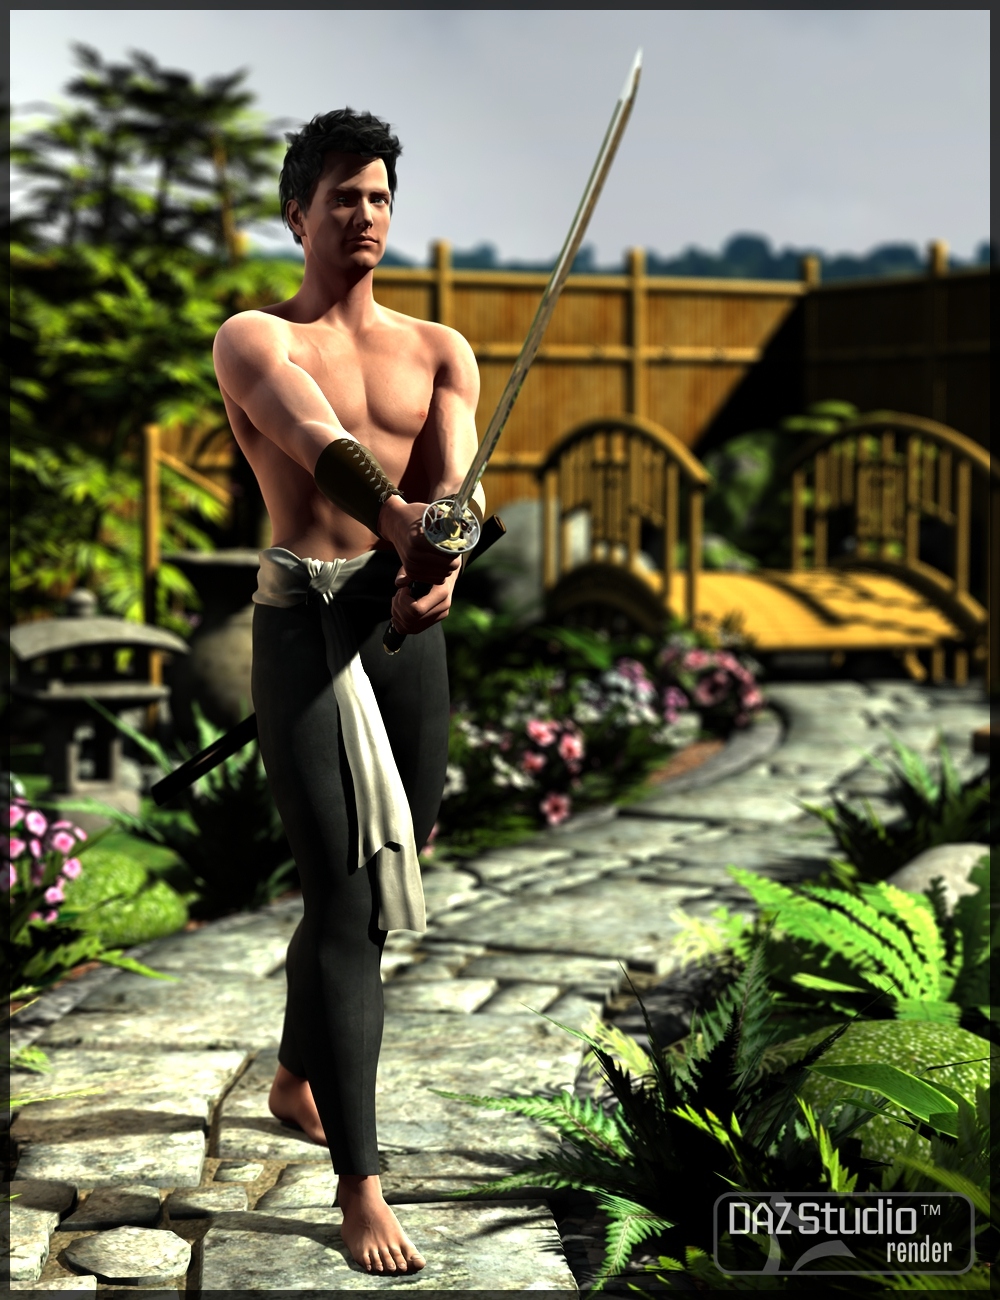 Kenjutsu Sword by: Merlin Studios, 3D Models by Daz 3D